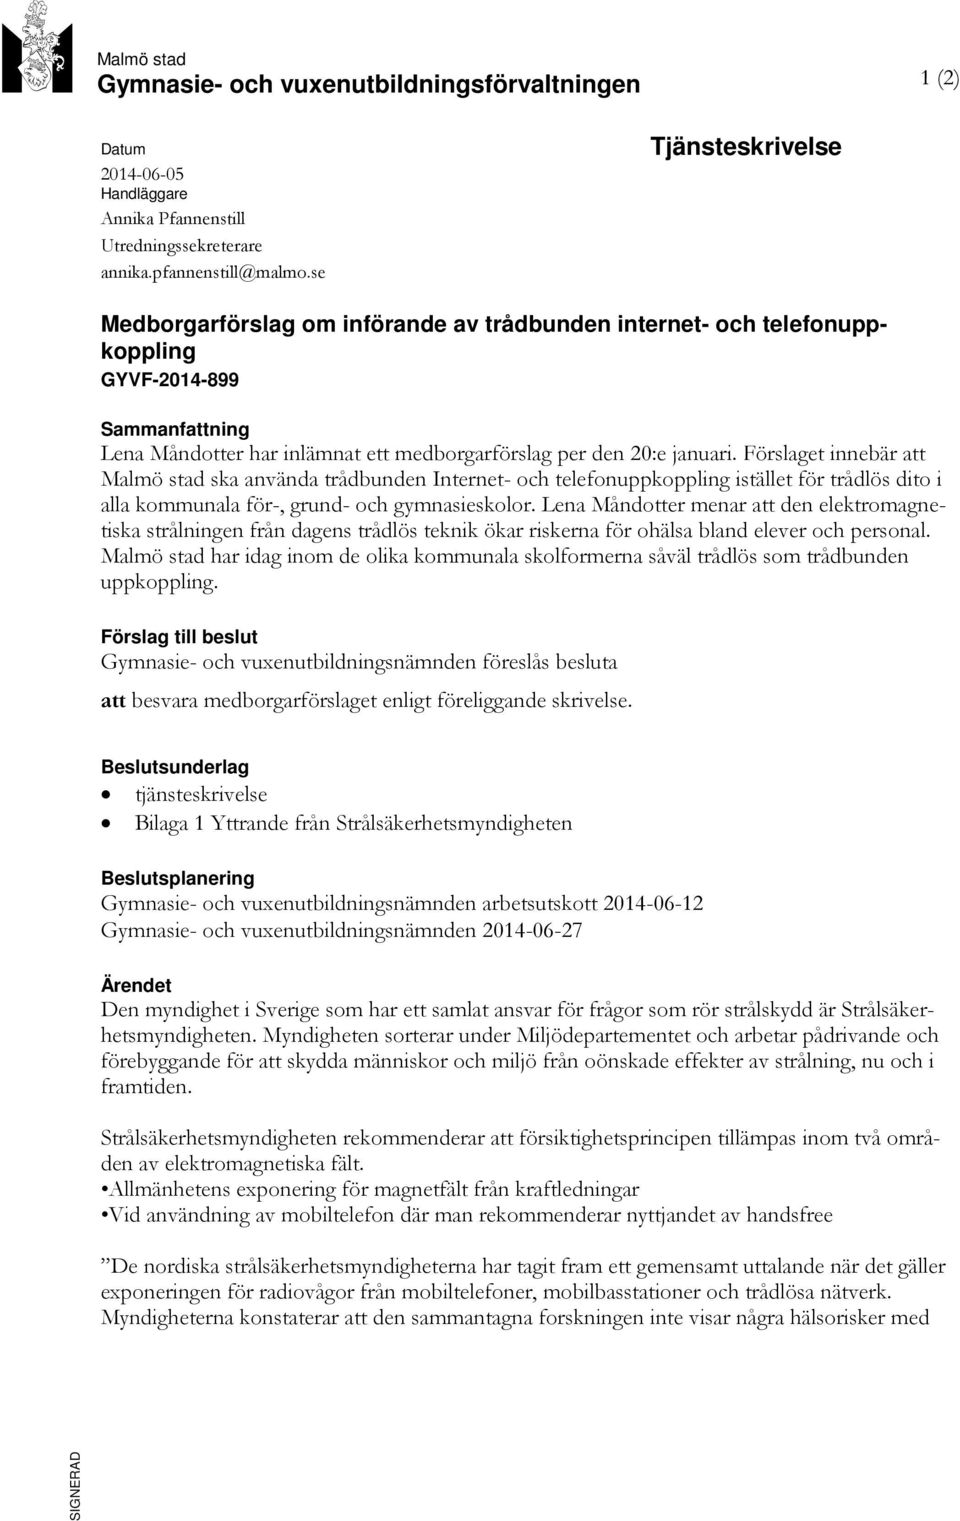 Förslaget innebär att Malmö stad ska använda trådbunden Internet- och telefonuppkoppling istället för trådlös dito i alla kommunala för-, grund- och gymnasieskolor.